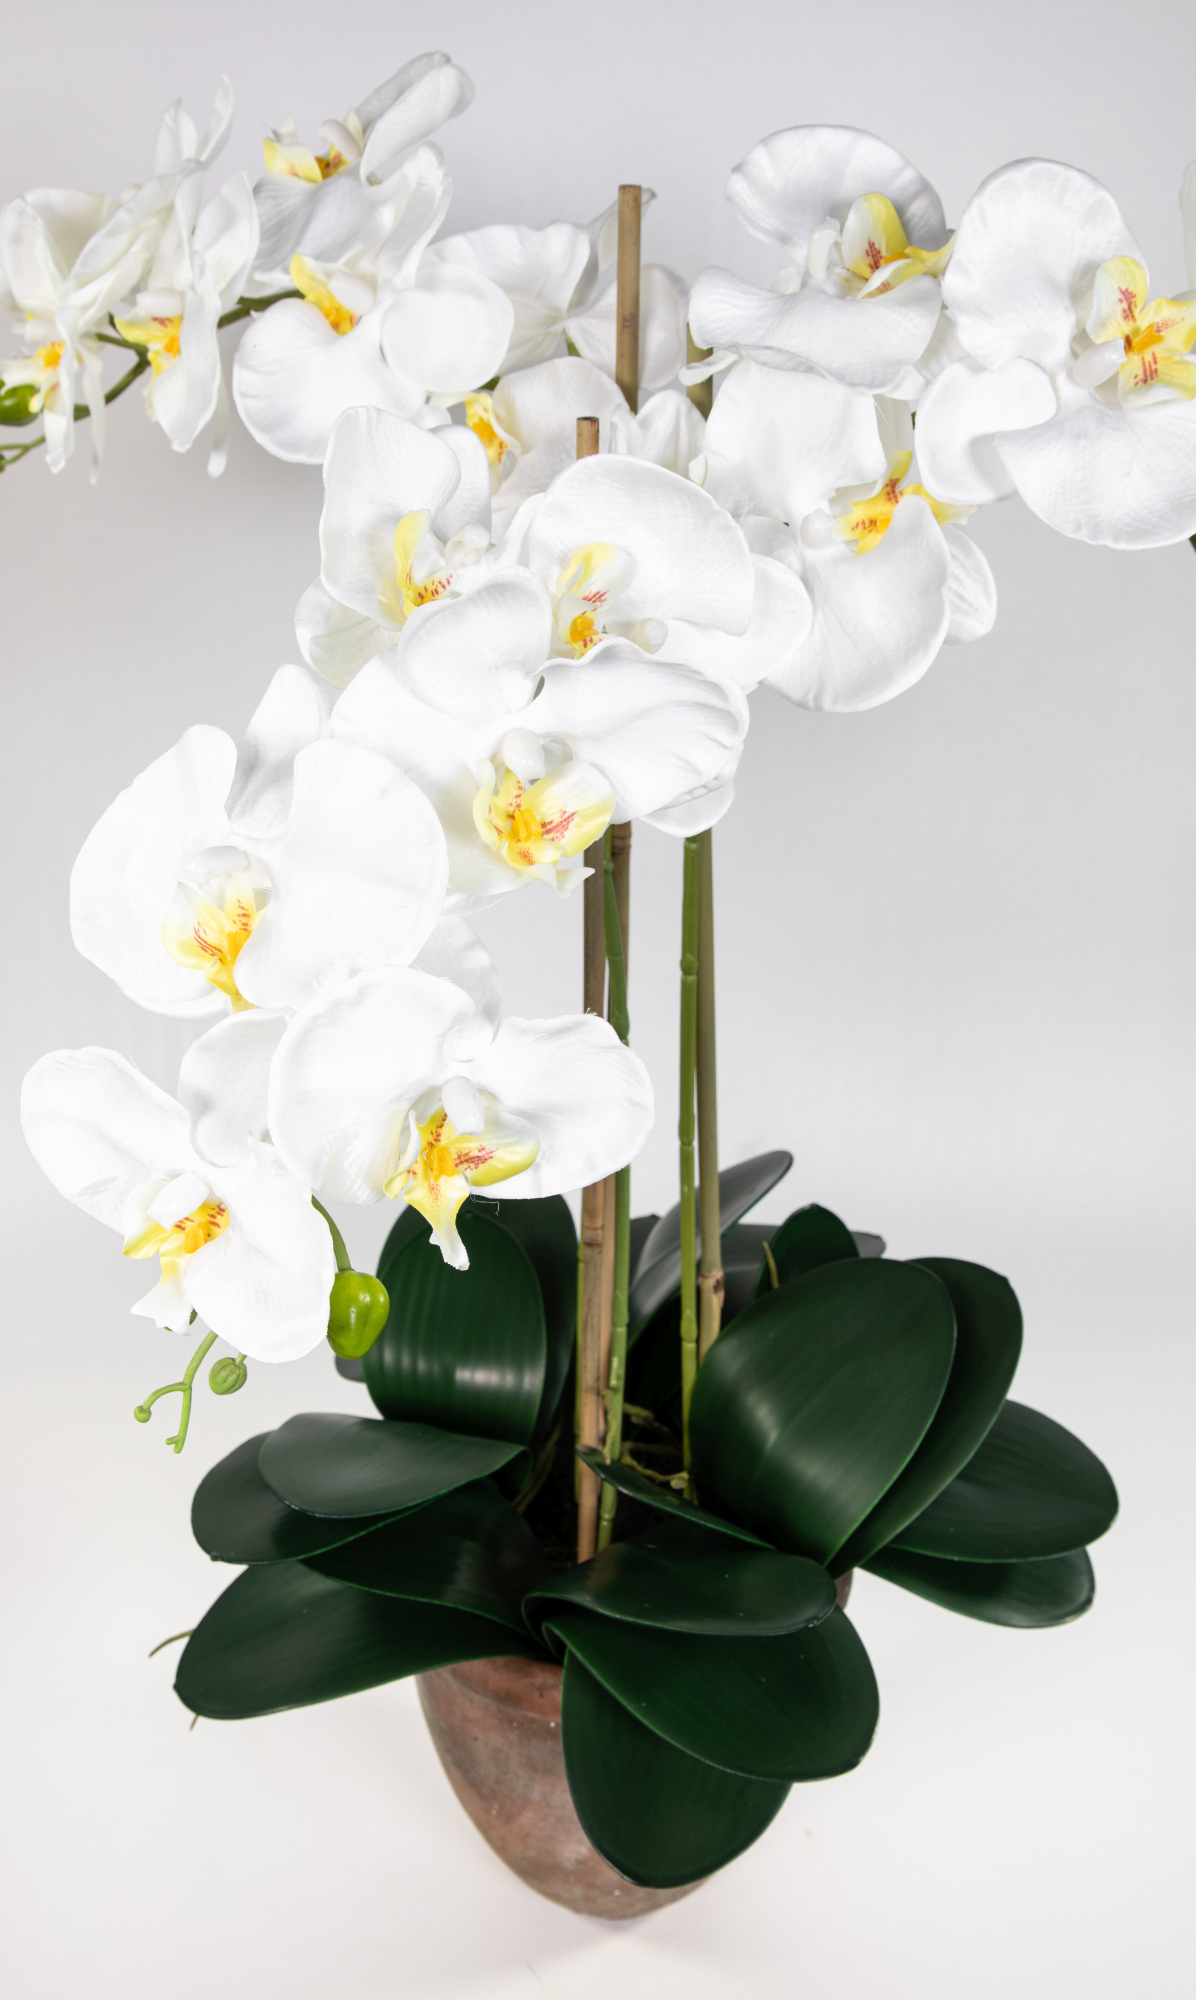 Blumen weiß Phalaenopsis Orchidee 75x60cm im Terracottatopf künstliche Kunstblumen GA